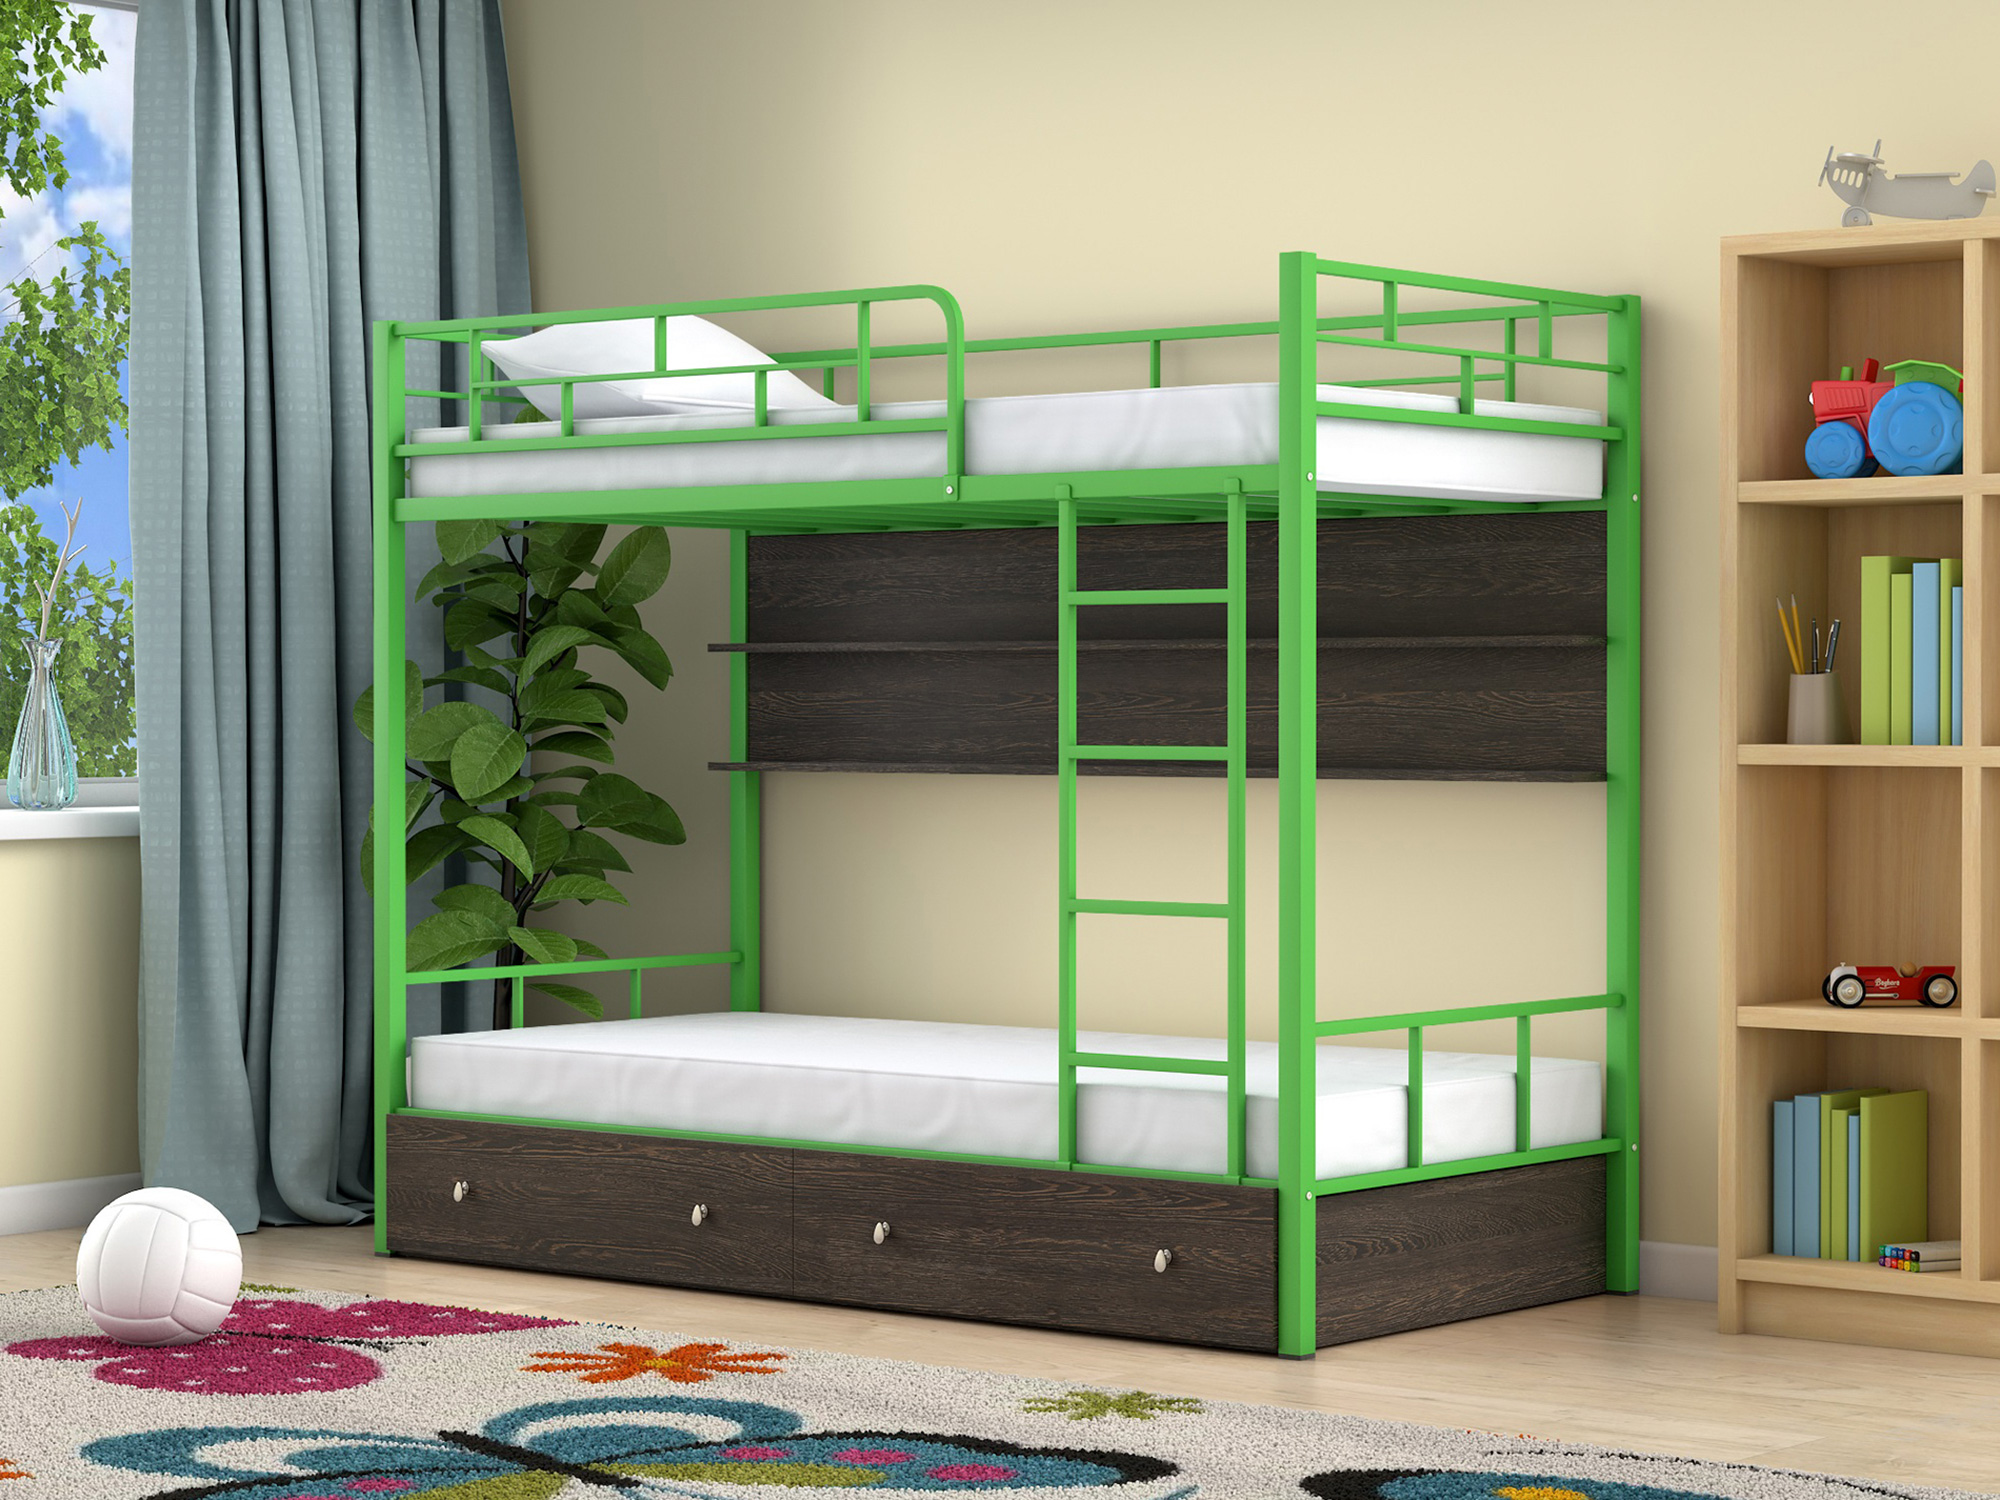 Двухъярусная кровать Ницца (90х190) Венге, , Коричневый темный, Зеленый, ЛДСП, Металл двухъярусная кровать ницца 90х190 венге коричневый темный зеленый лдсп металл